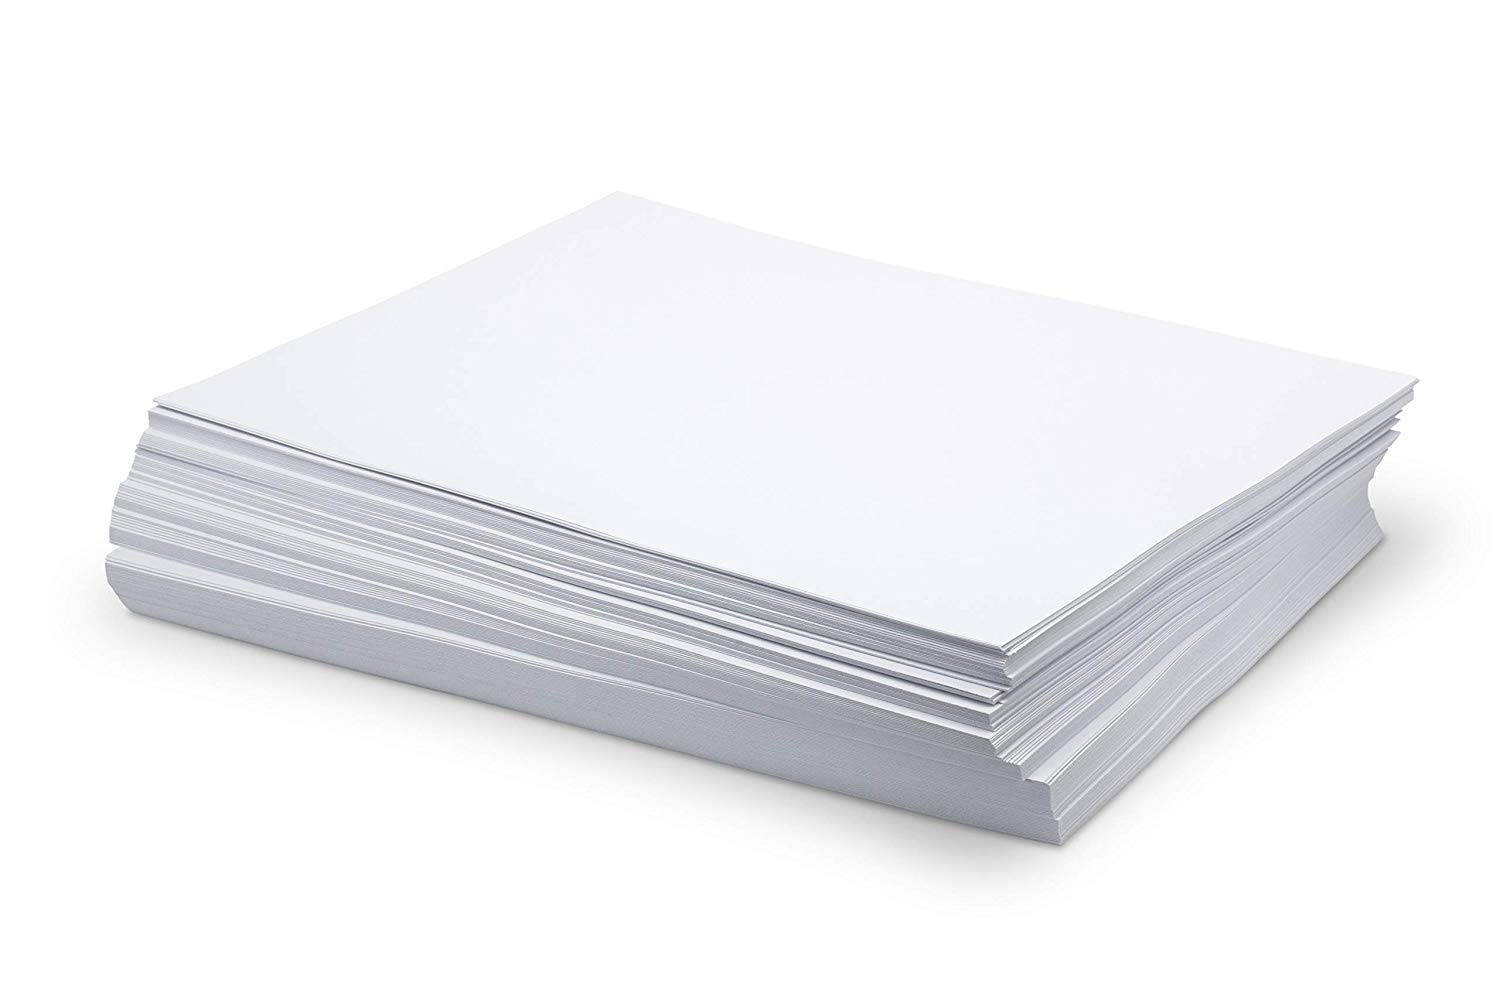 【文具通】影印紙 白色 B6 70gsm size 128 × 182mm 500 sheets 1包 500張 出貨為10包 含稅價 P1410888